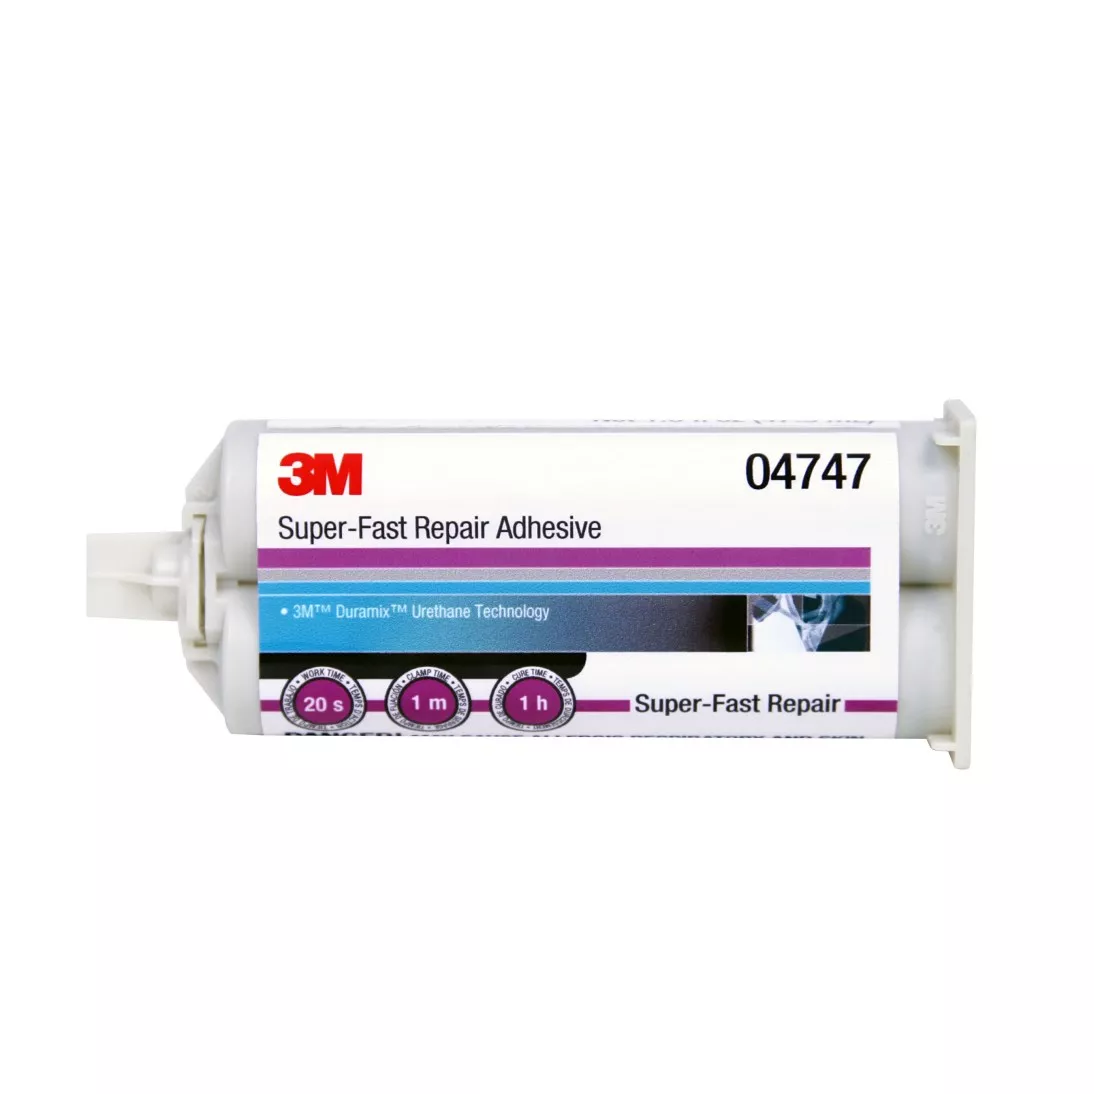 3M™ Super-Fast Repair Adhesive, 04747, Amber, 47.3 mL Cartridge, 6 per
case